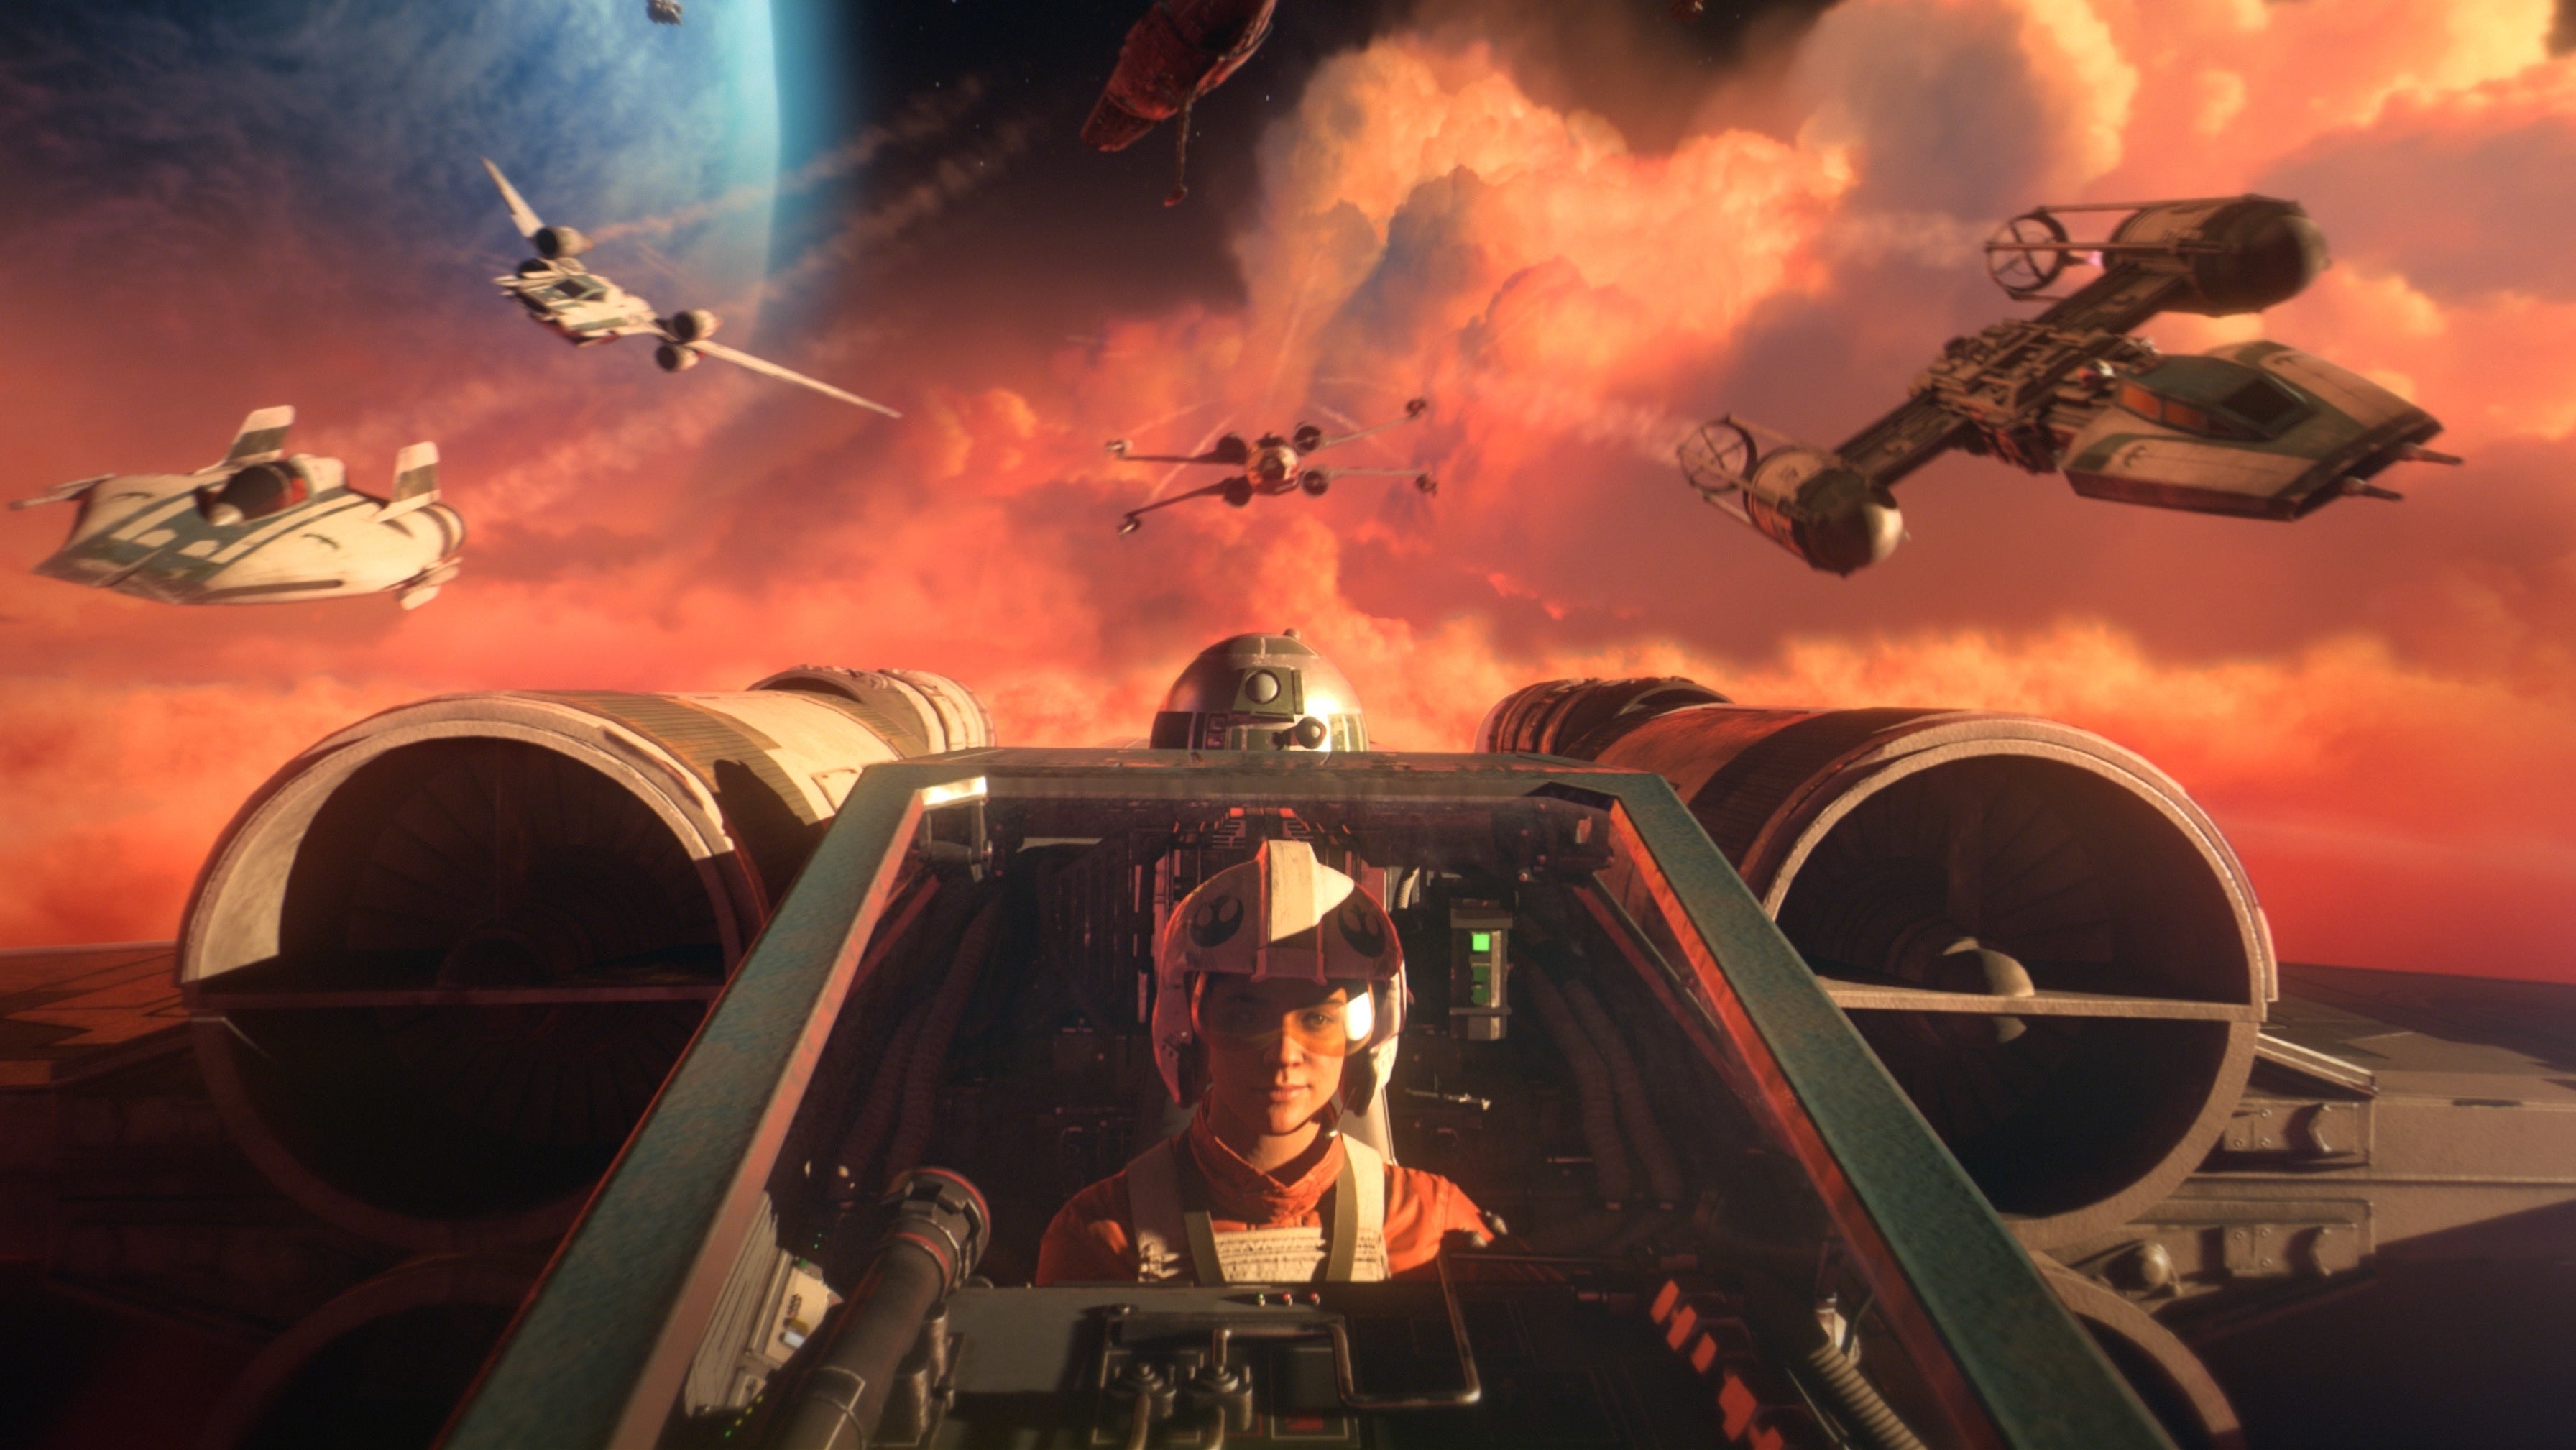 Image for Přiblíženy nextgen vychytávky v EA hrách jako Star Wars: Squadrons, FIFA 21 či Apex Legends